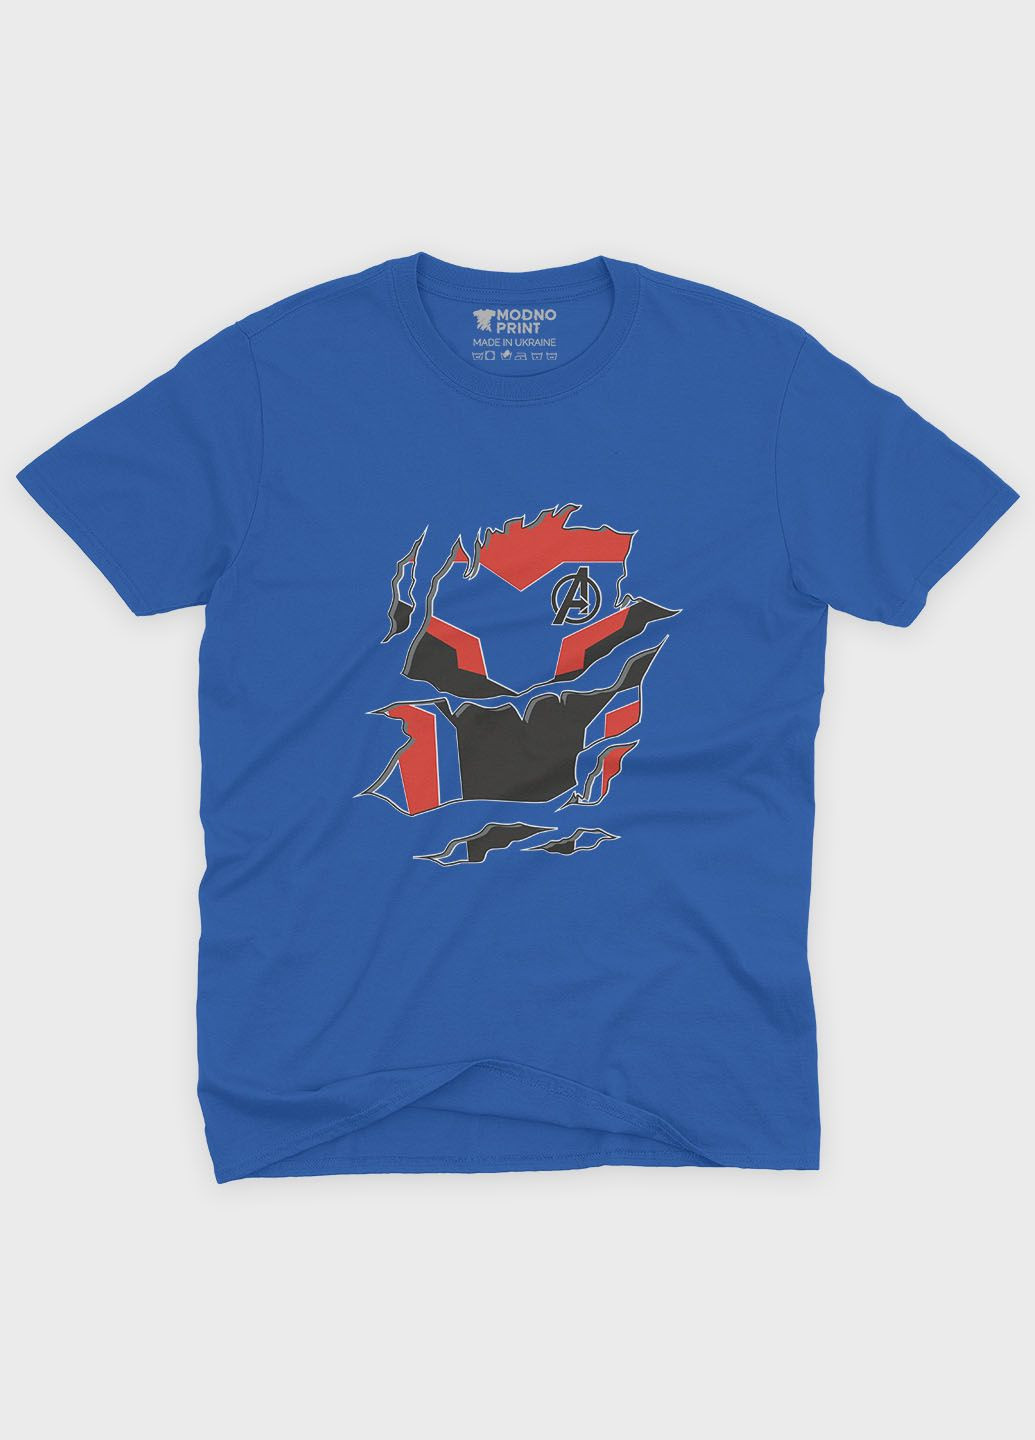 Синяя демисезонная футболка для мальчика с принтом супергероя - железный человек (ts001-1-brr-006-016-006-b) Modno